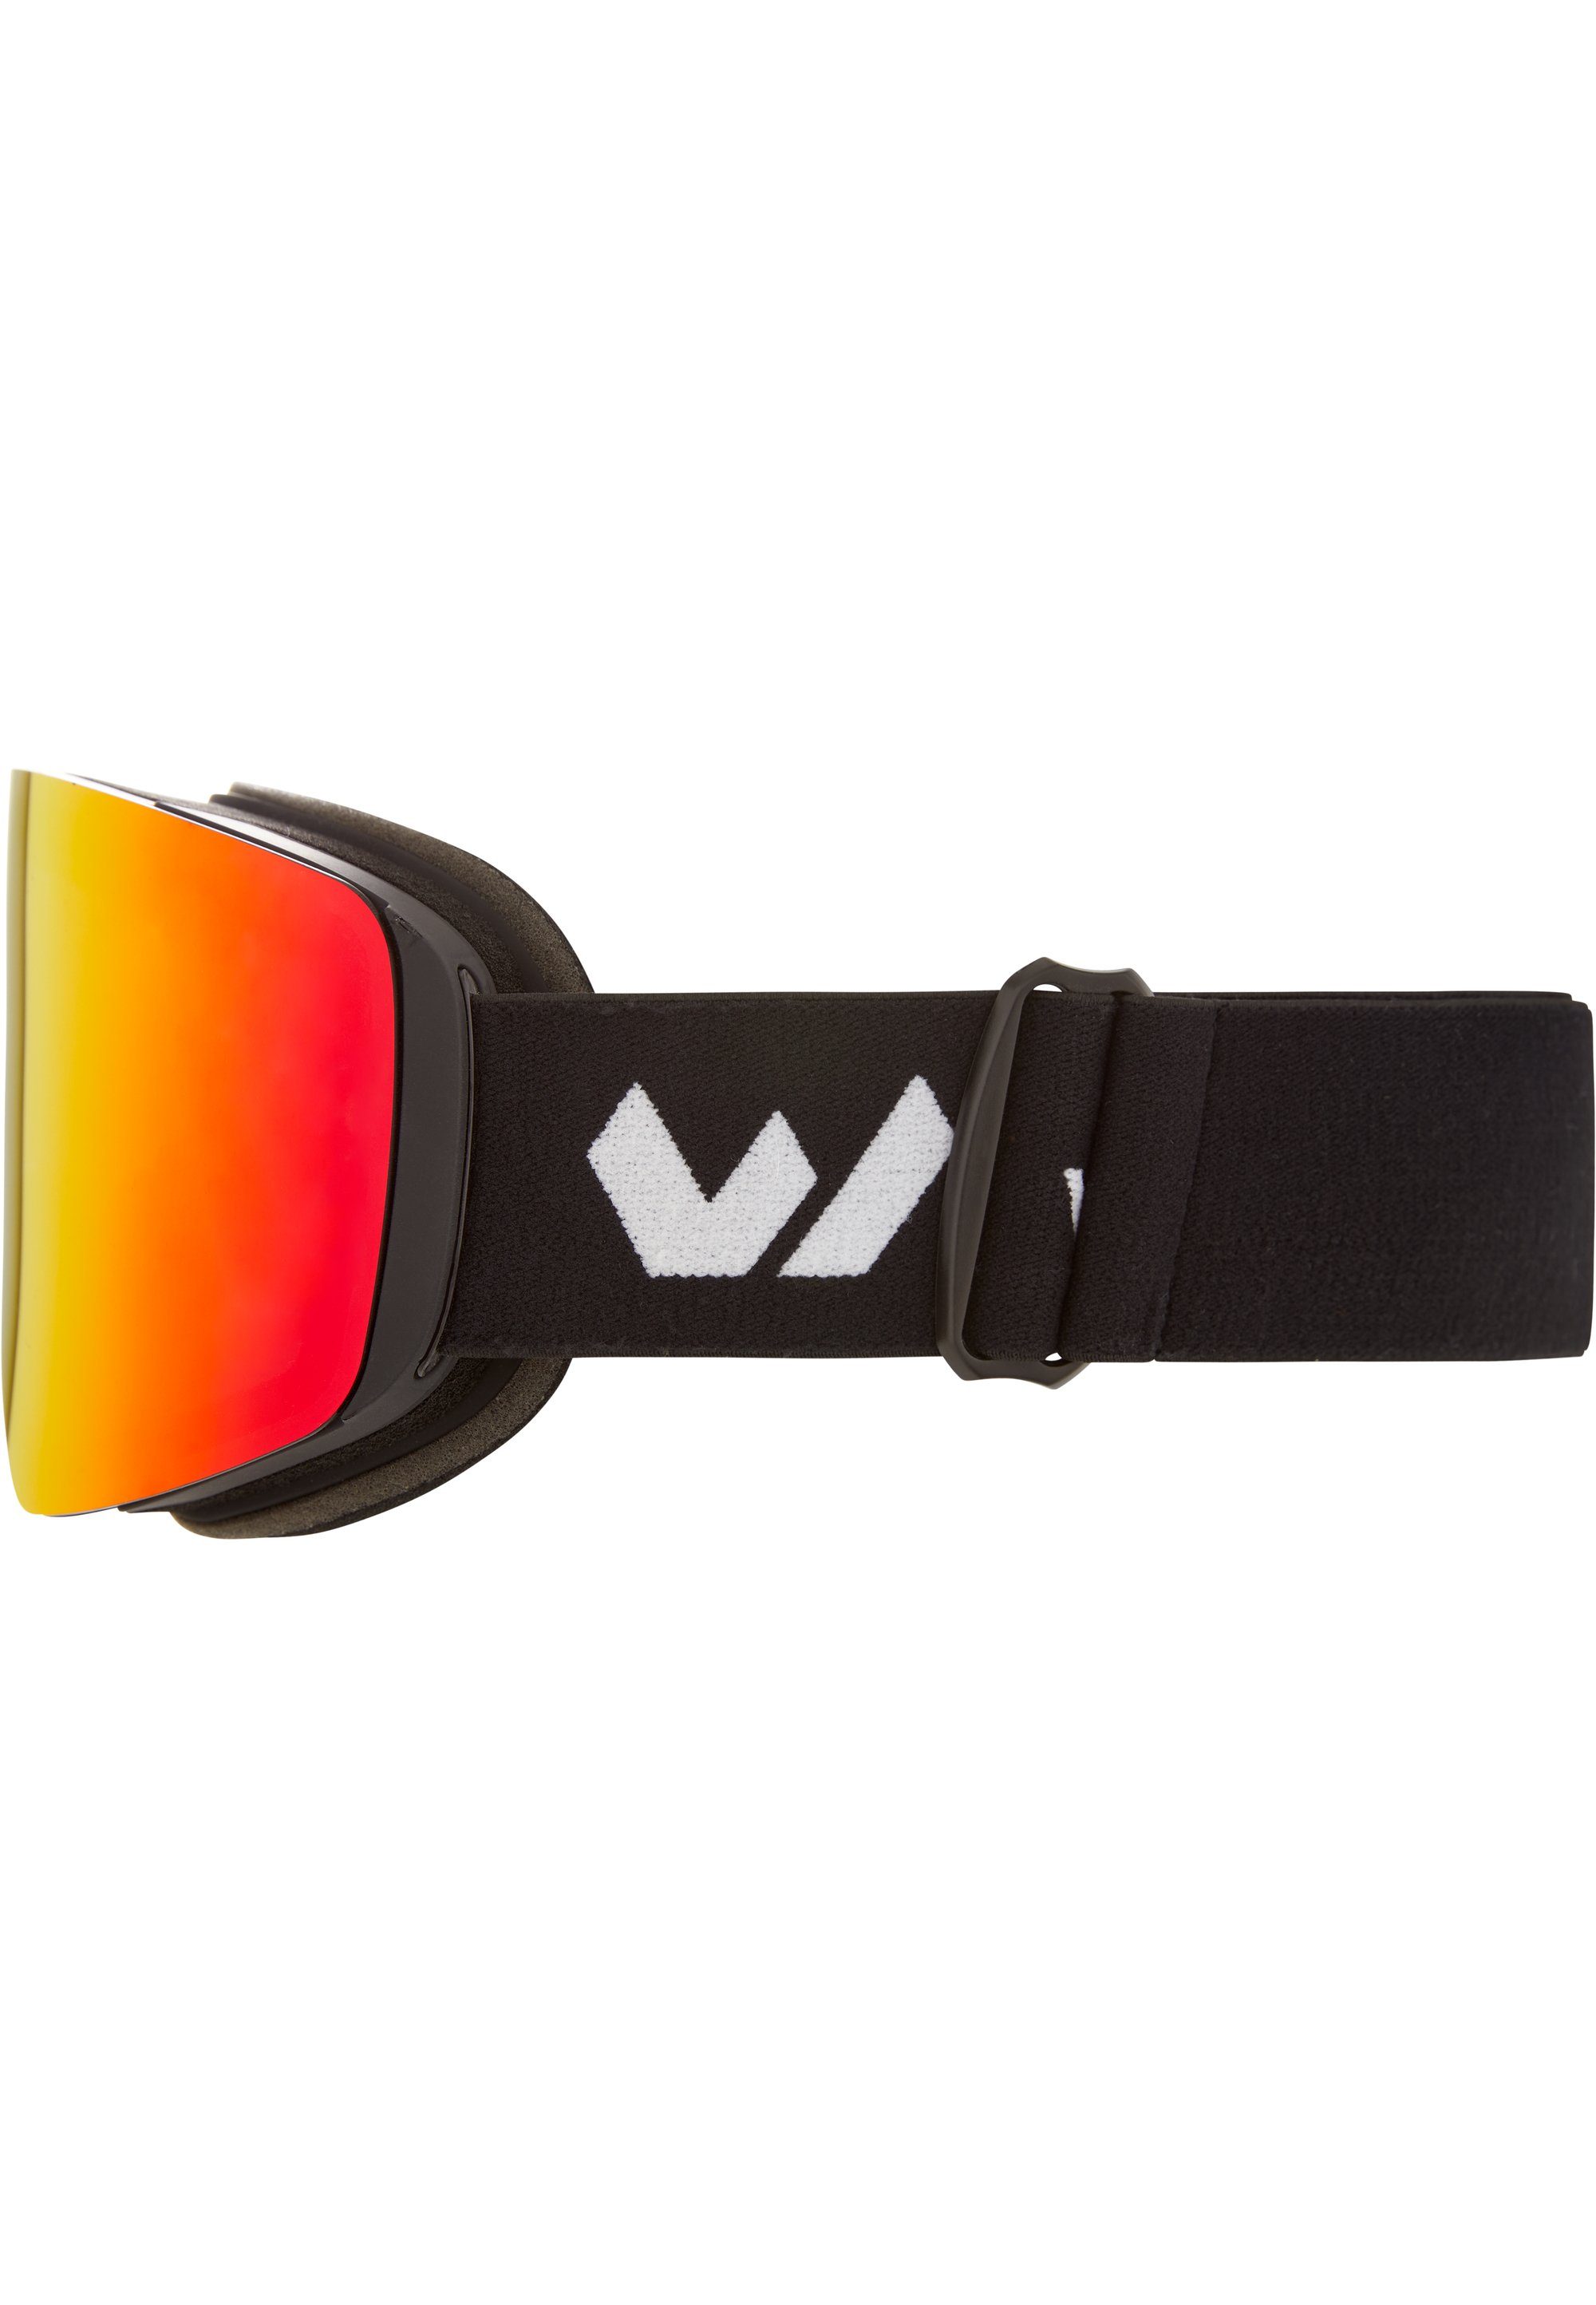 WHISTLER Skibrille WS7100, austauschbaren mit Gläsern